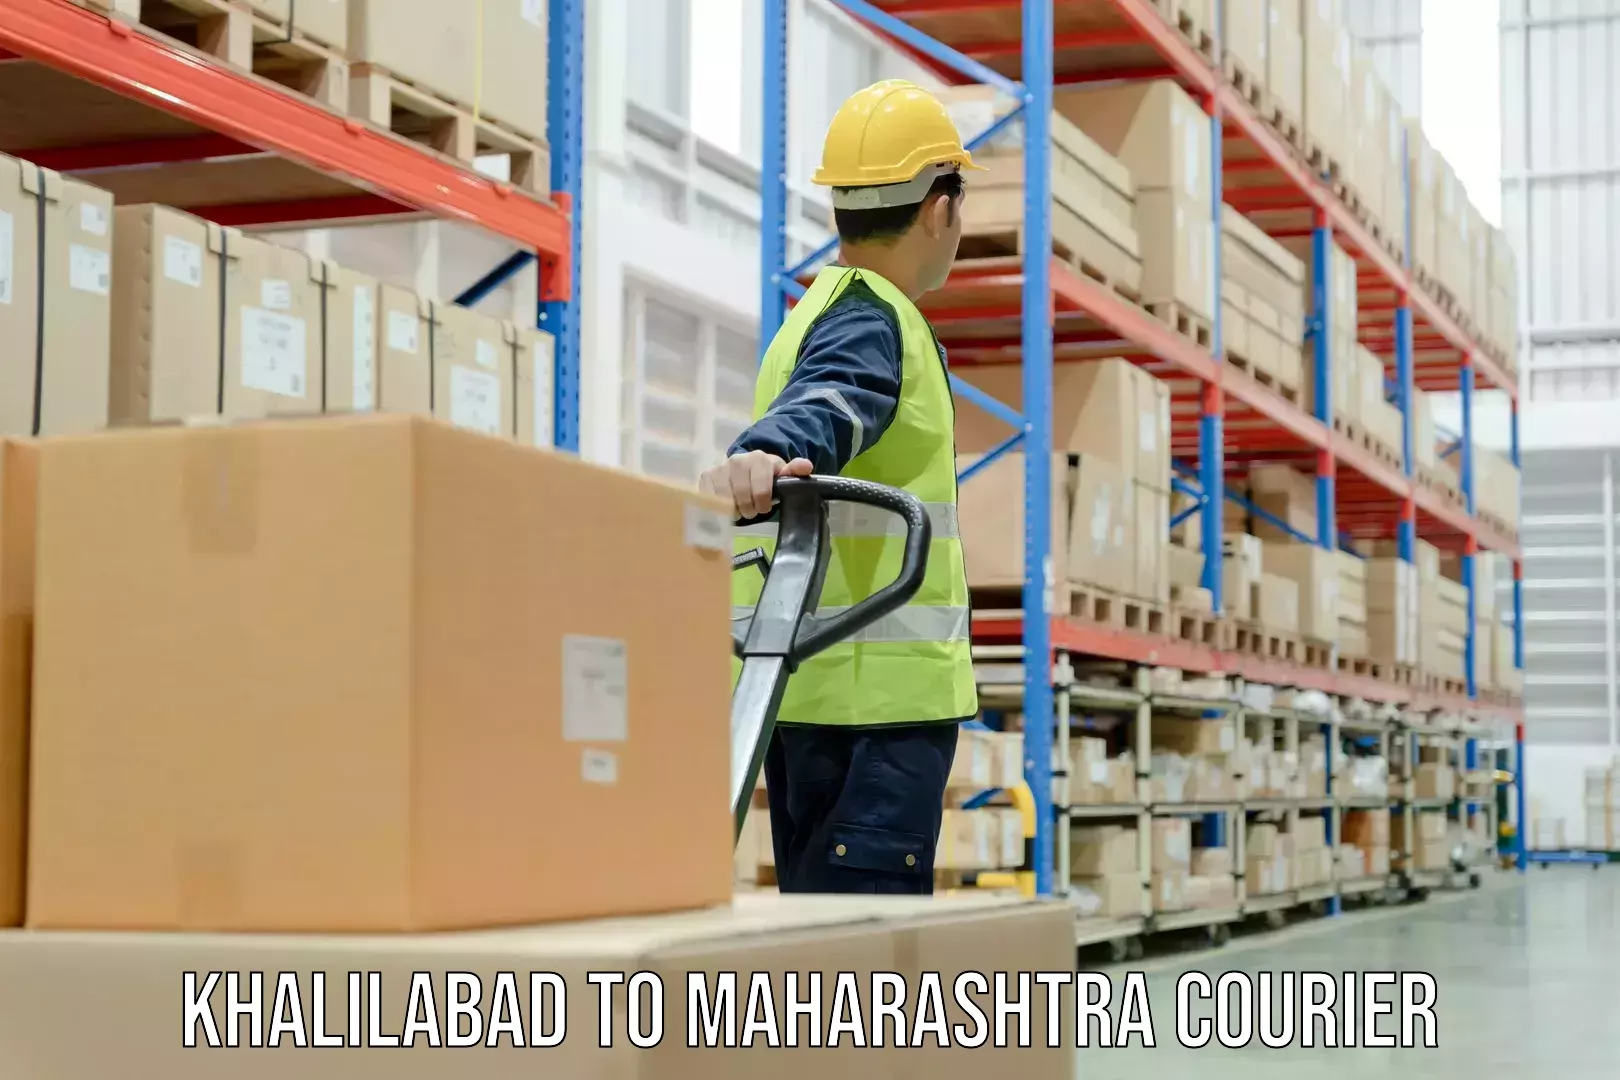 Urgent courier needs Khalilabad to Maharashtra